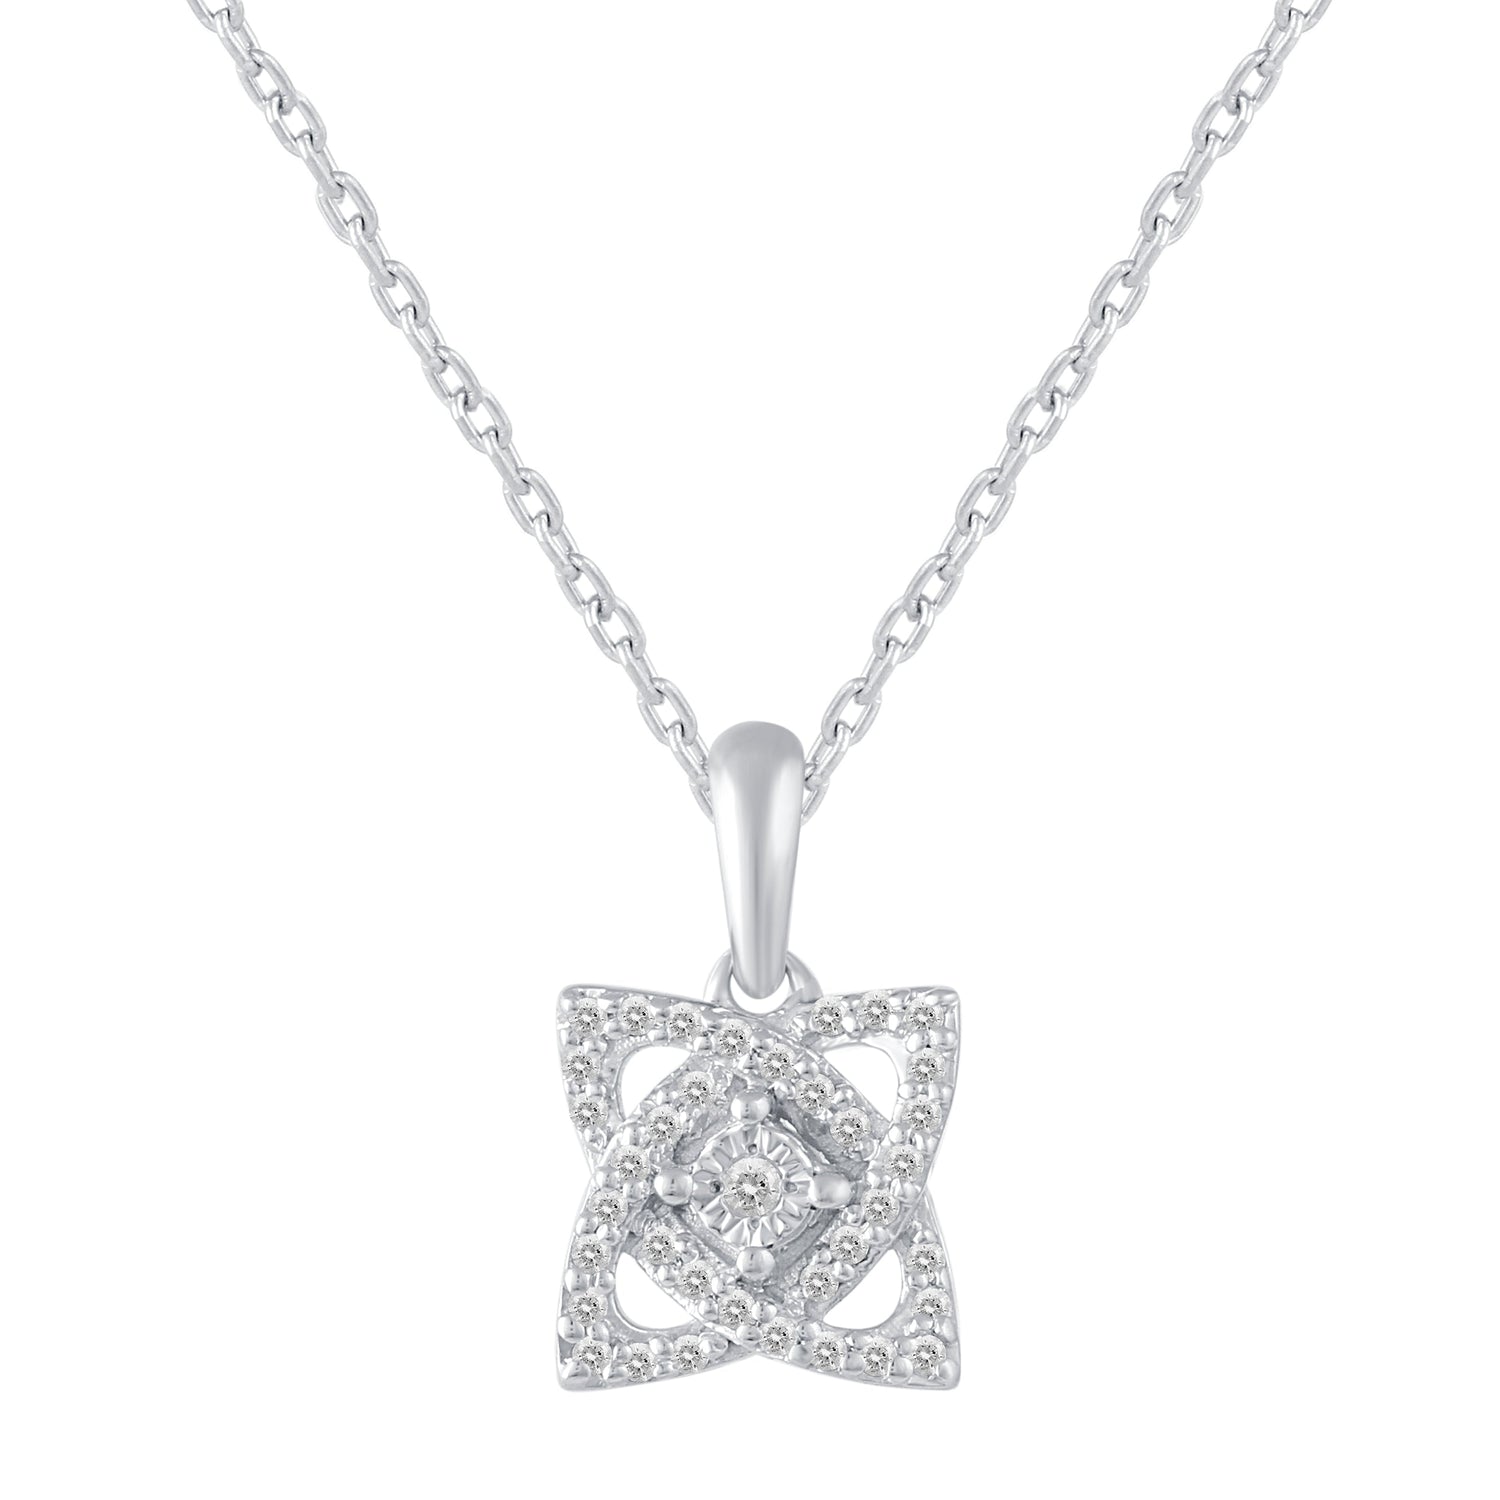 1/10 CT TW Diamond Open Petal Flower Pendant in 925 Sterling Silver